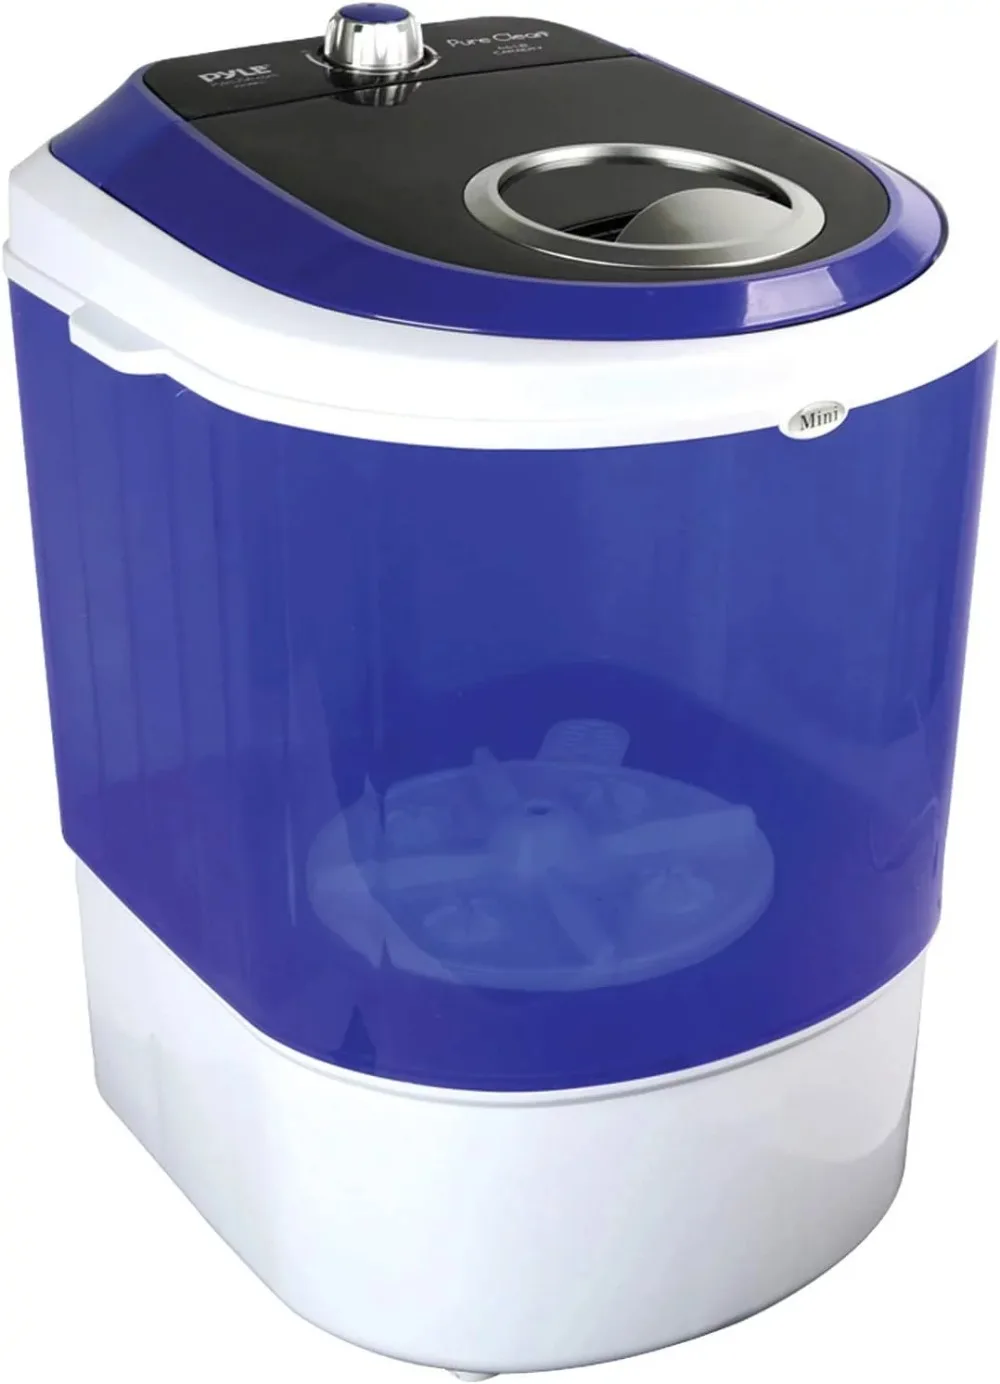 Washing Machine - Portable Mini Laundry Clothes Washer - $299.63